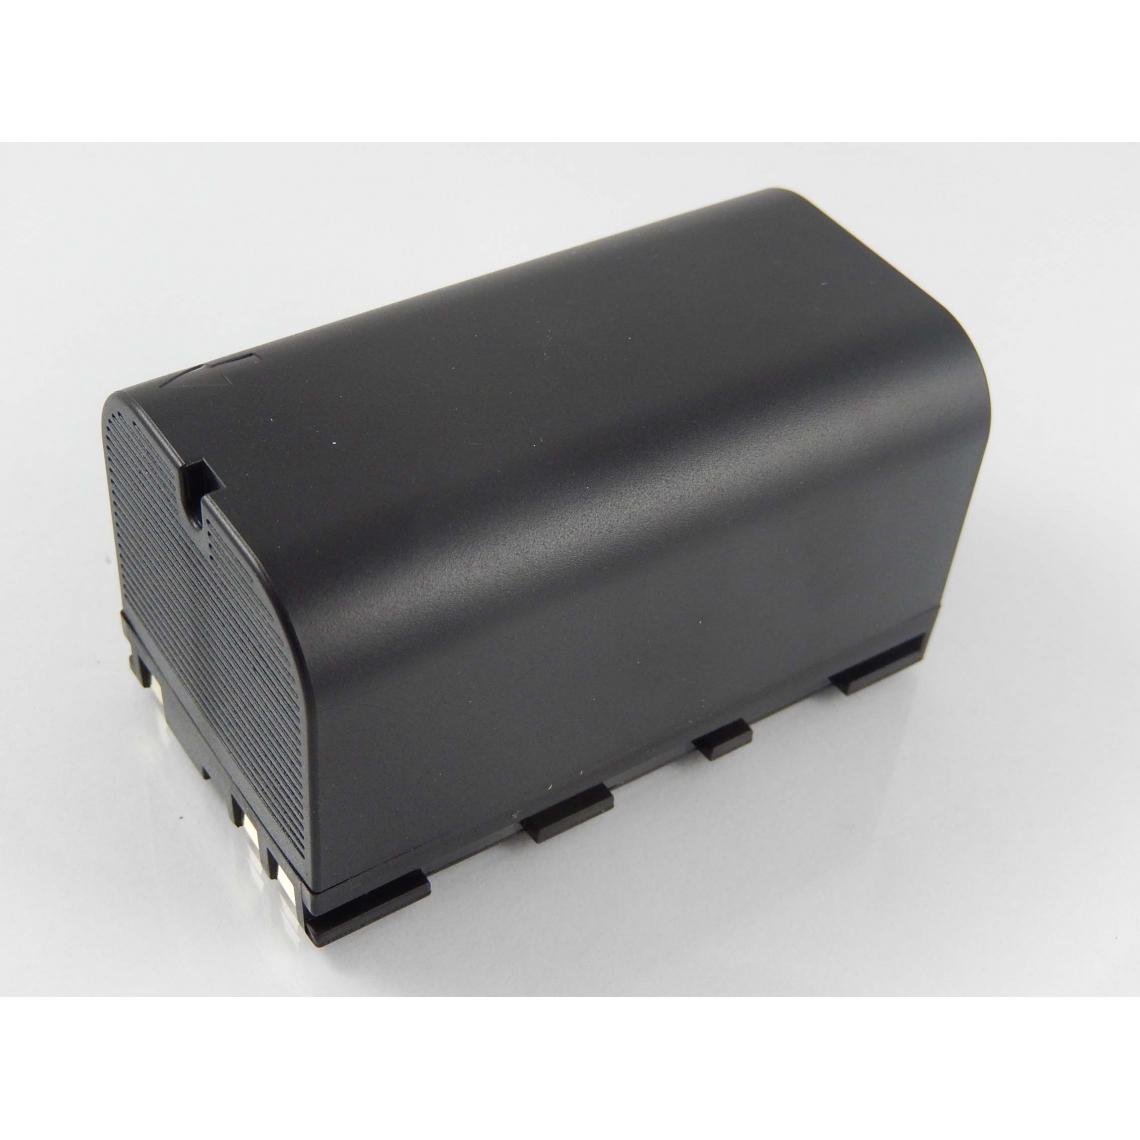 Vhbw - vhbw Batterie compatible avec Leica CS10, CS15, DNA03, DNA10 dispositif de mesure laser, outil de mesure (5600mAh, 7,4V, Li-ion) - Piles rechargeables